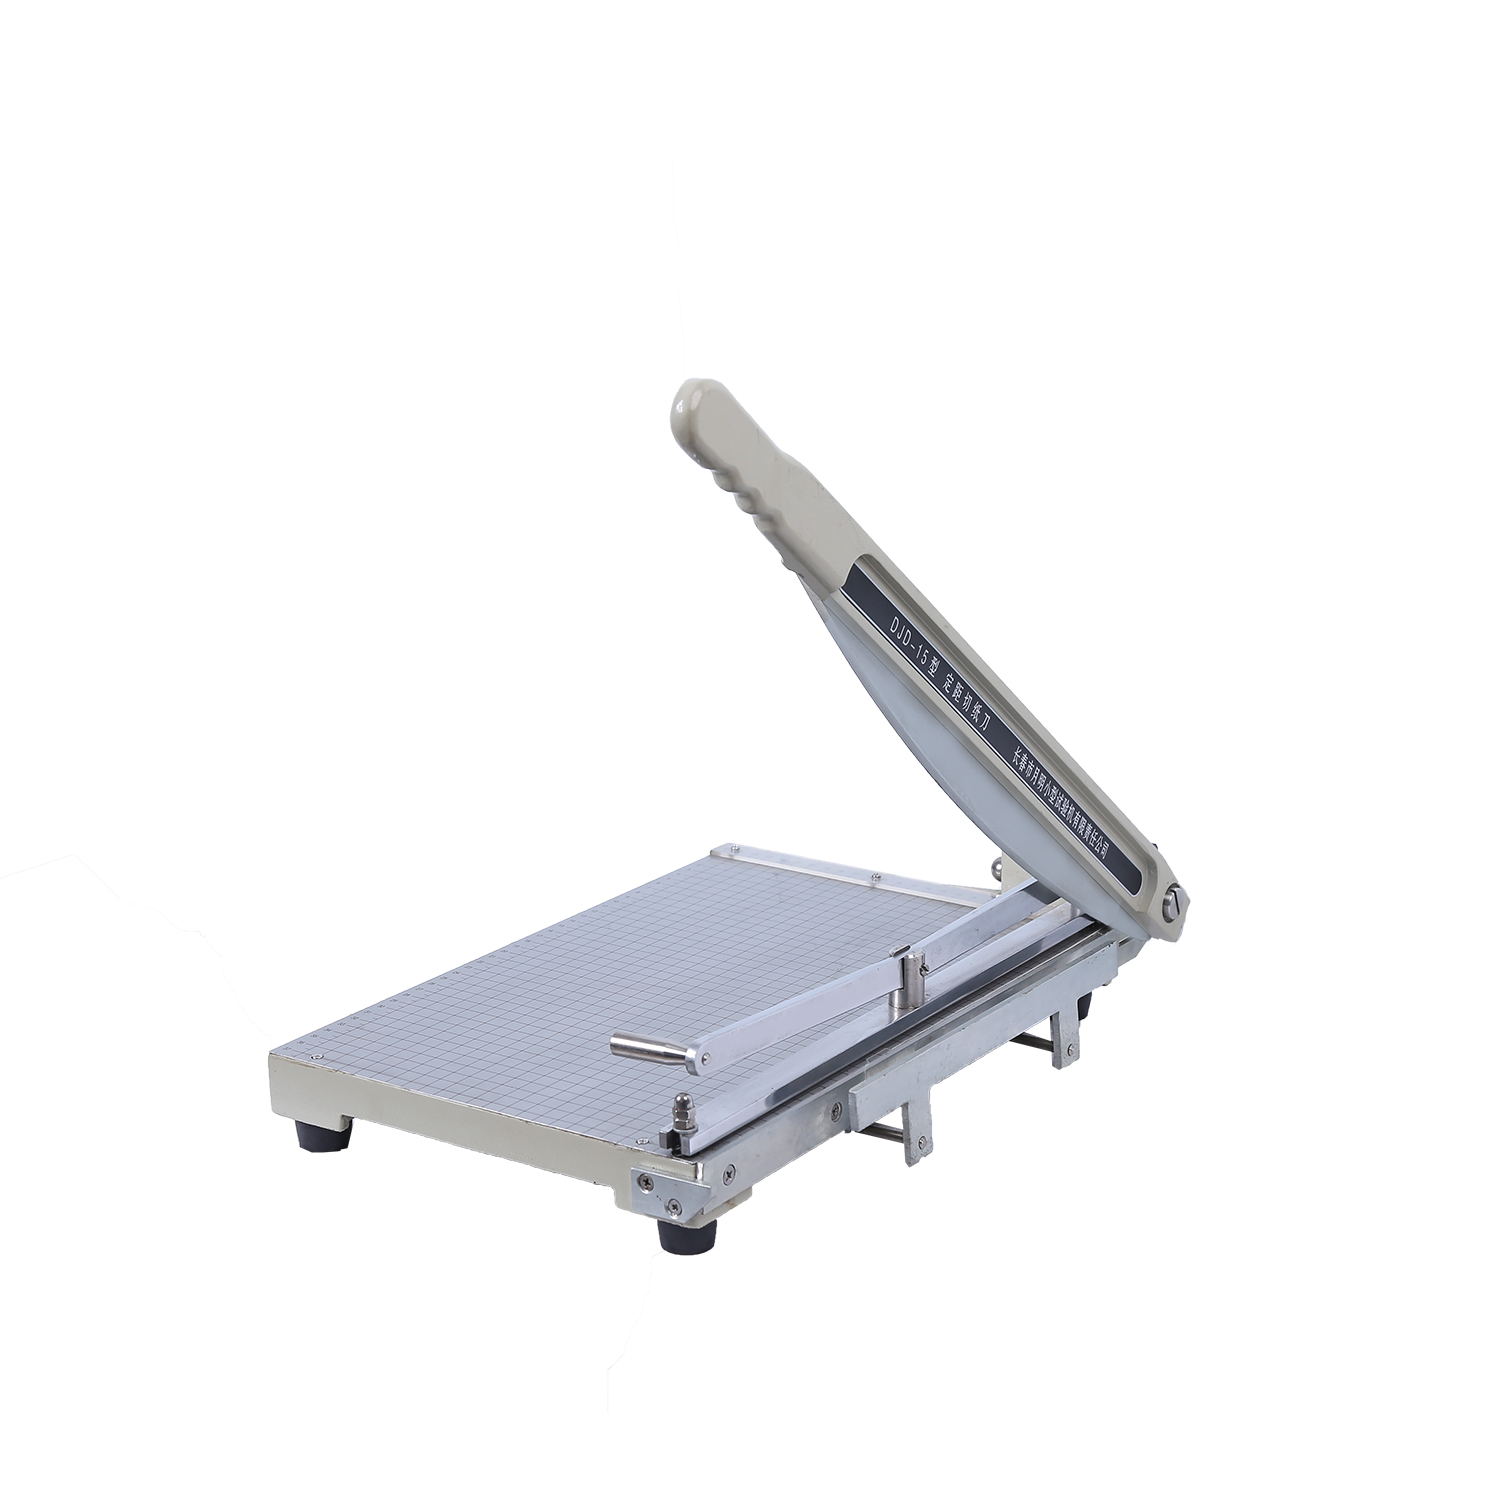 齐明-DJD-15型-定距切纸刀-用于测定抗张力和耐折度标准尺寸的试样切取。